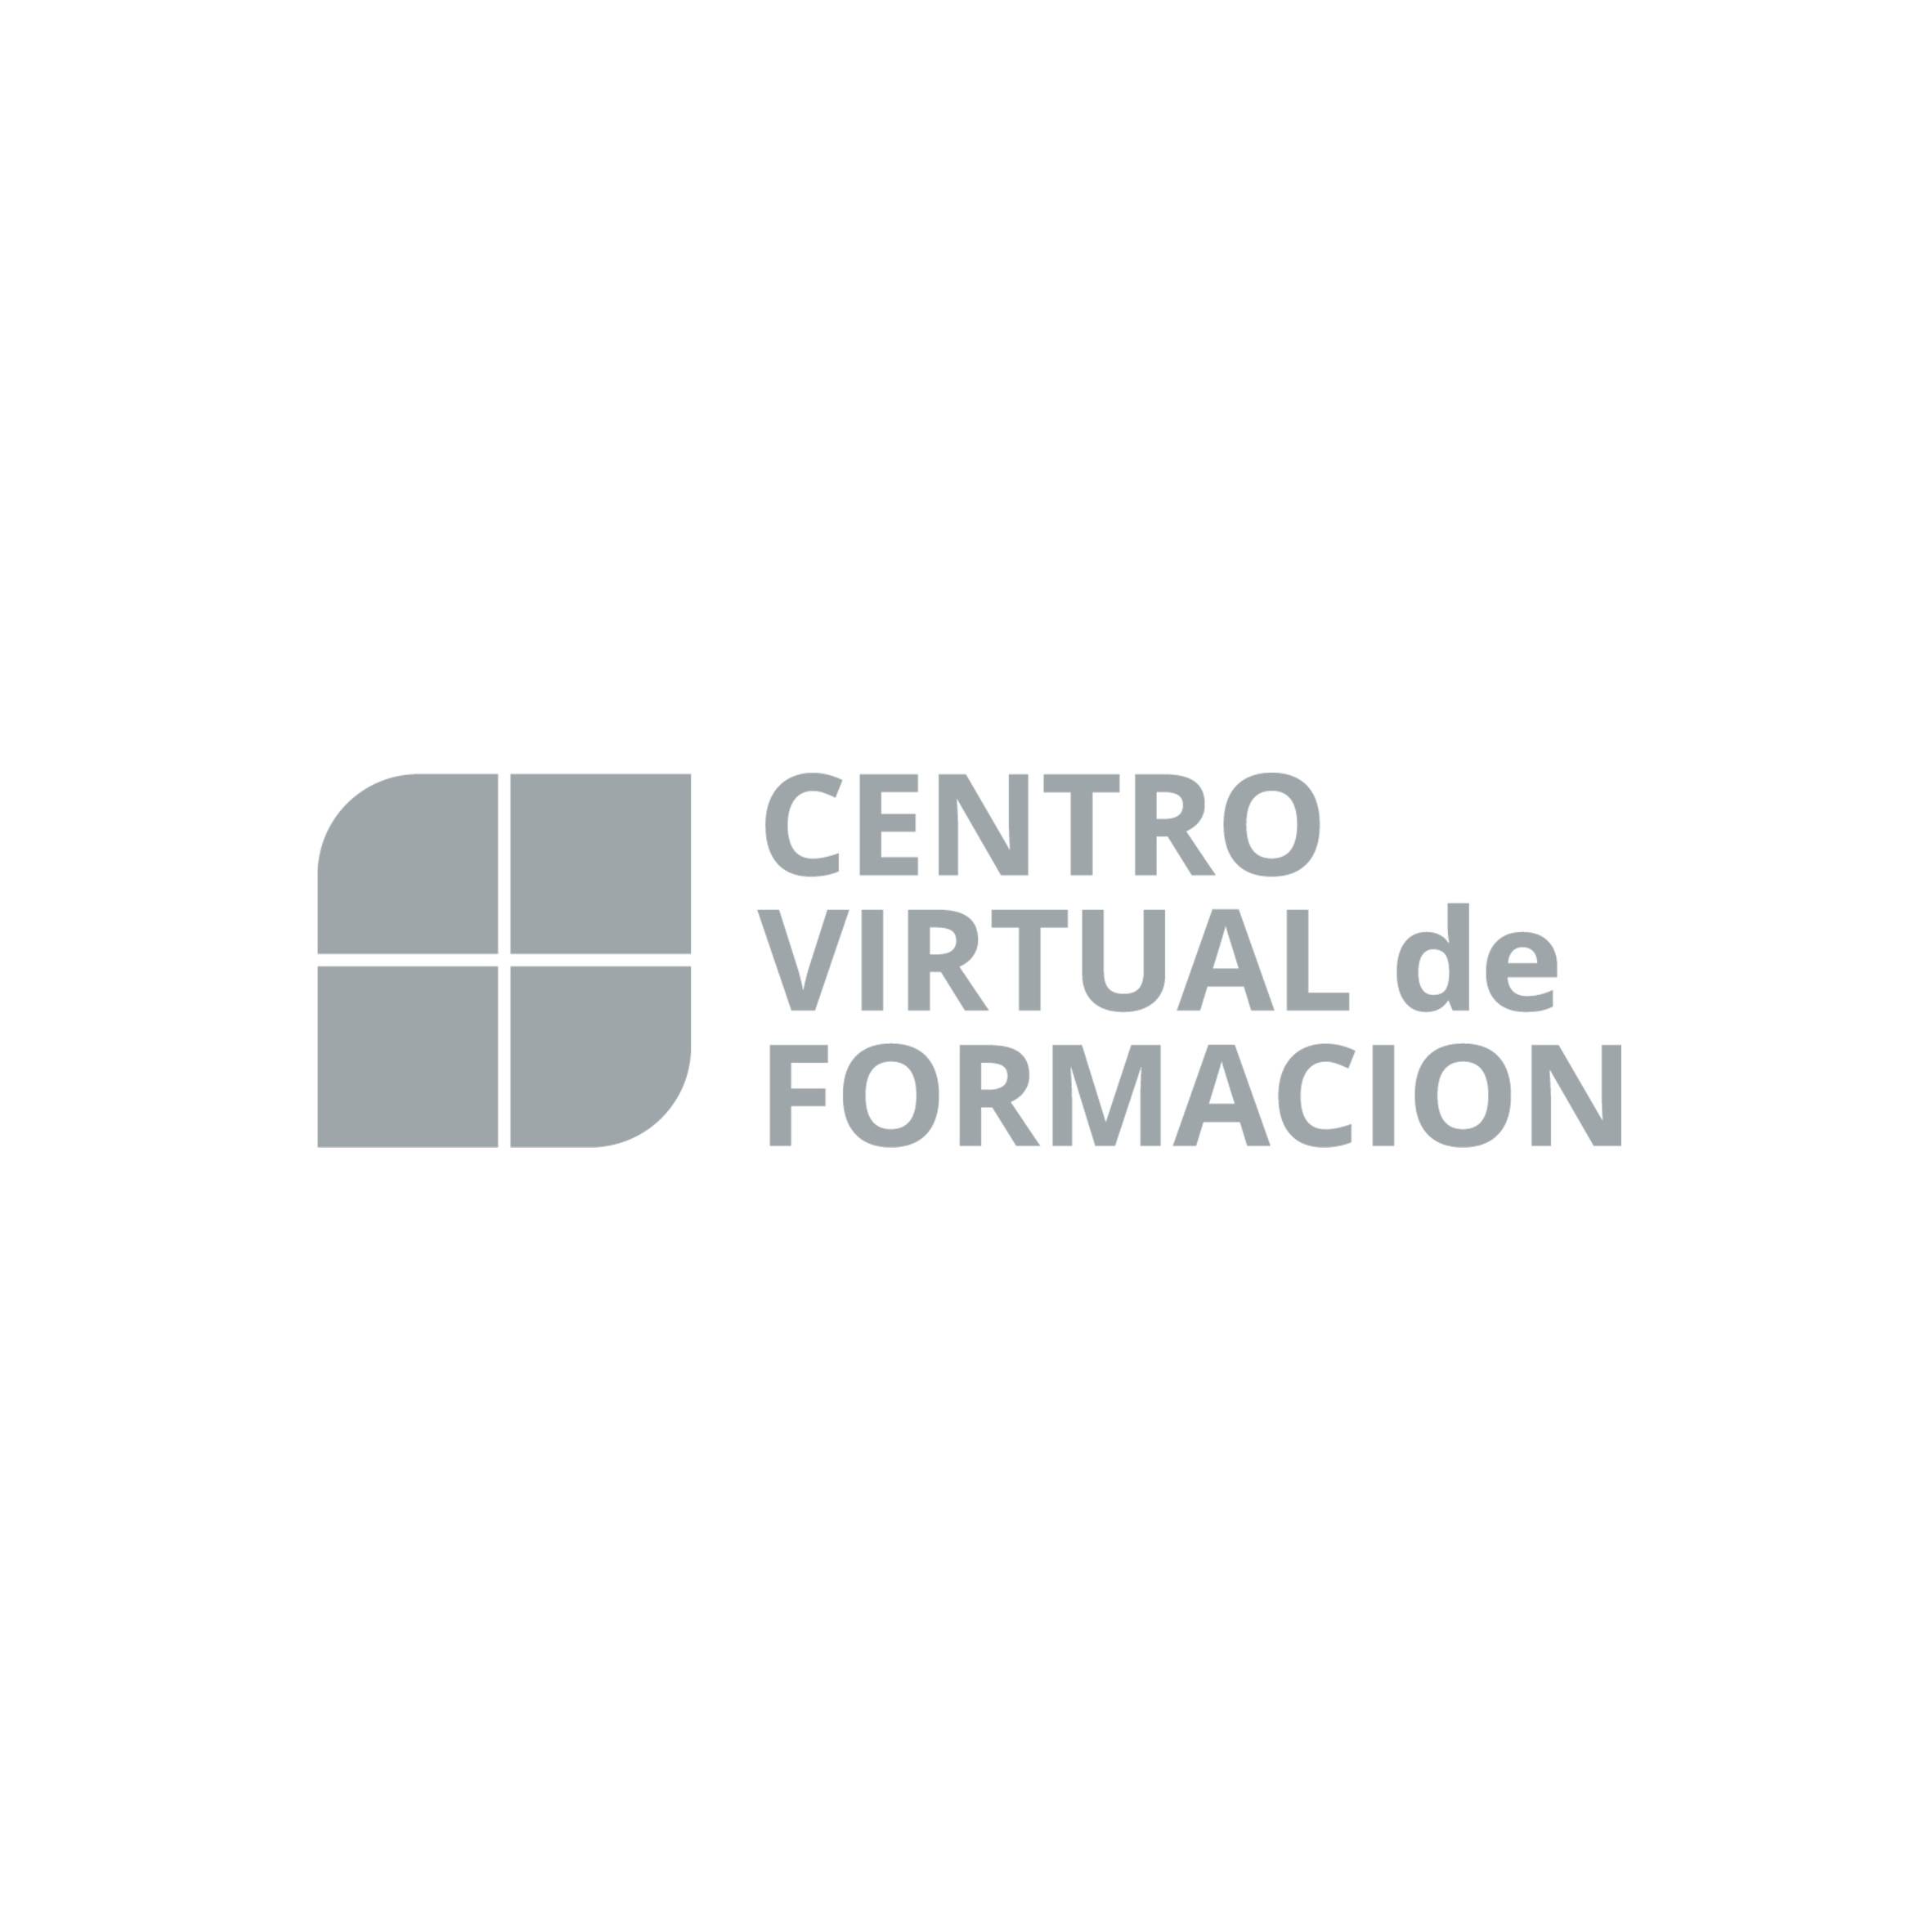 Logos centro virtual